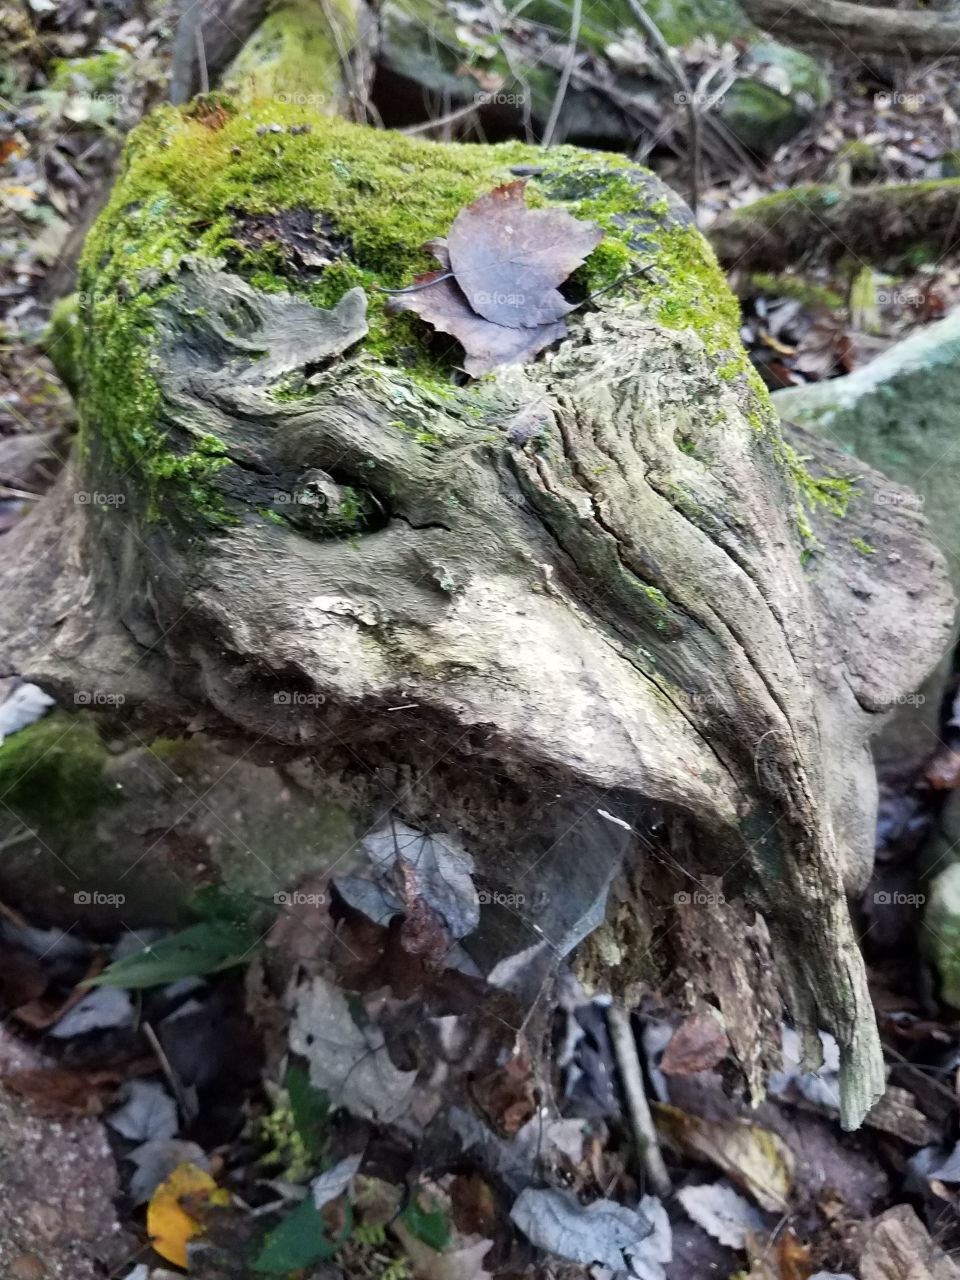 a fallen log face